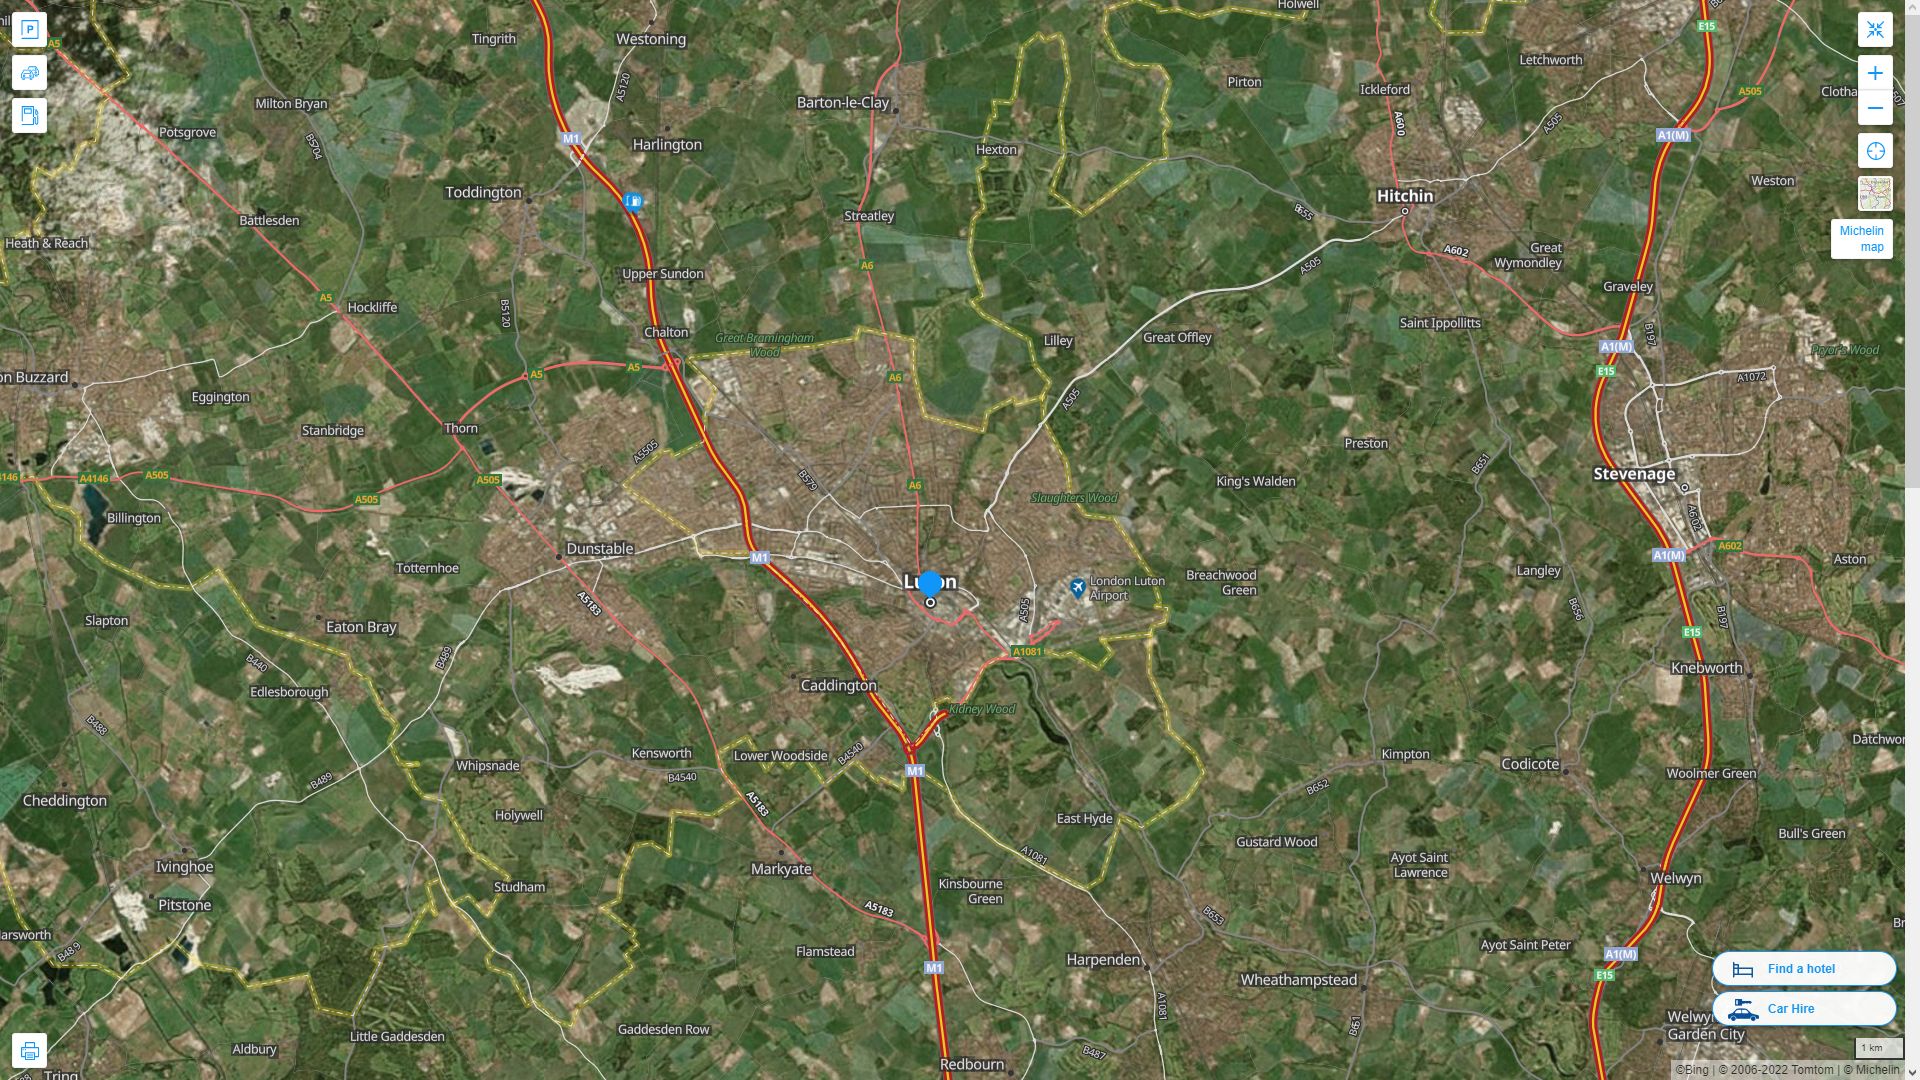 Luton Royaume Uni Autoroute et carte routiere avec vue satellite